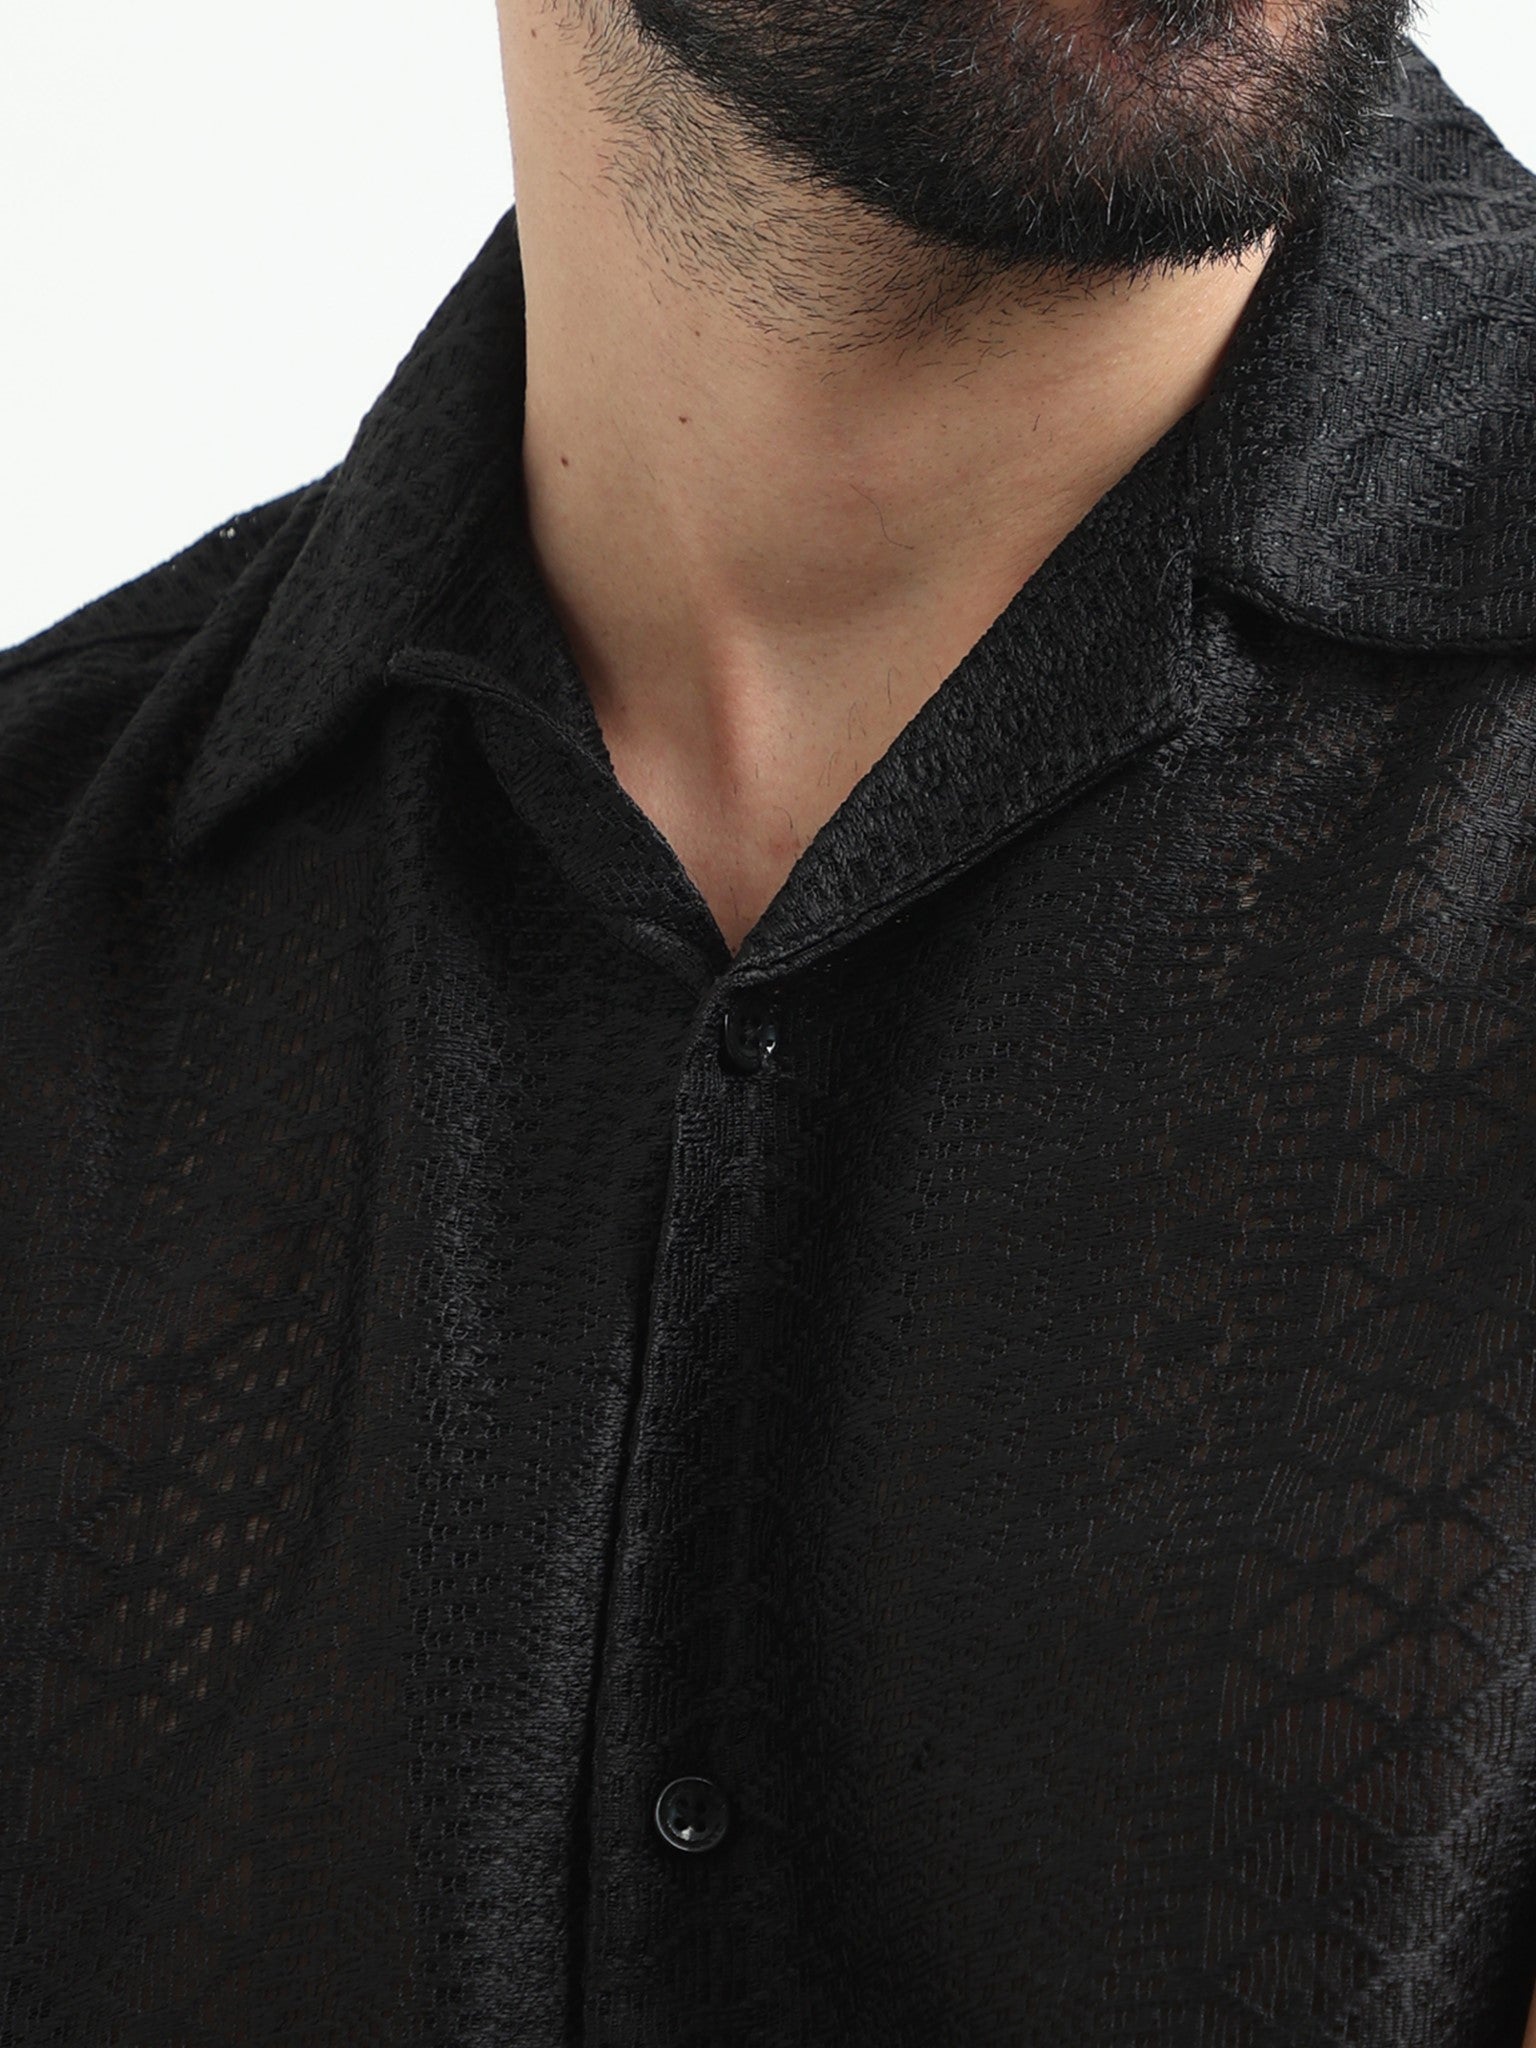 Exo Crochet Black Shirt for Men